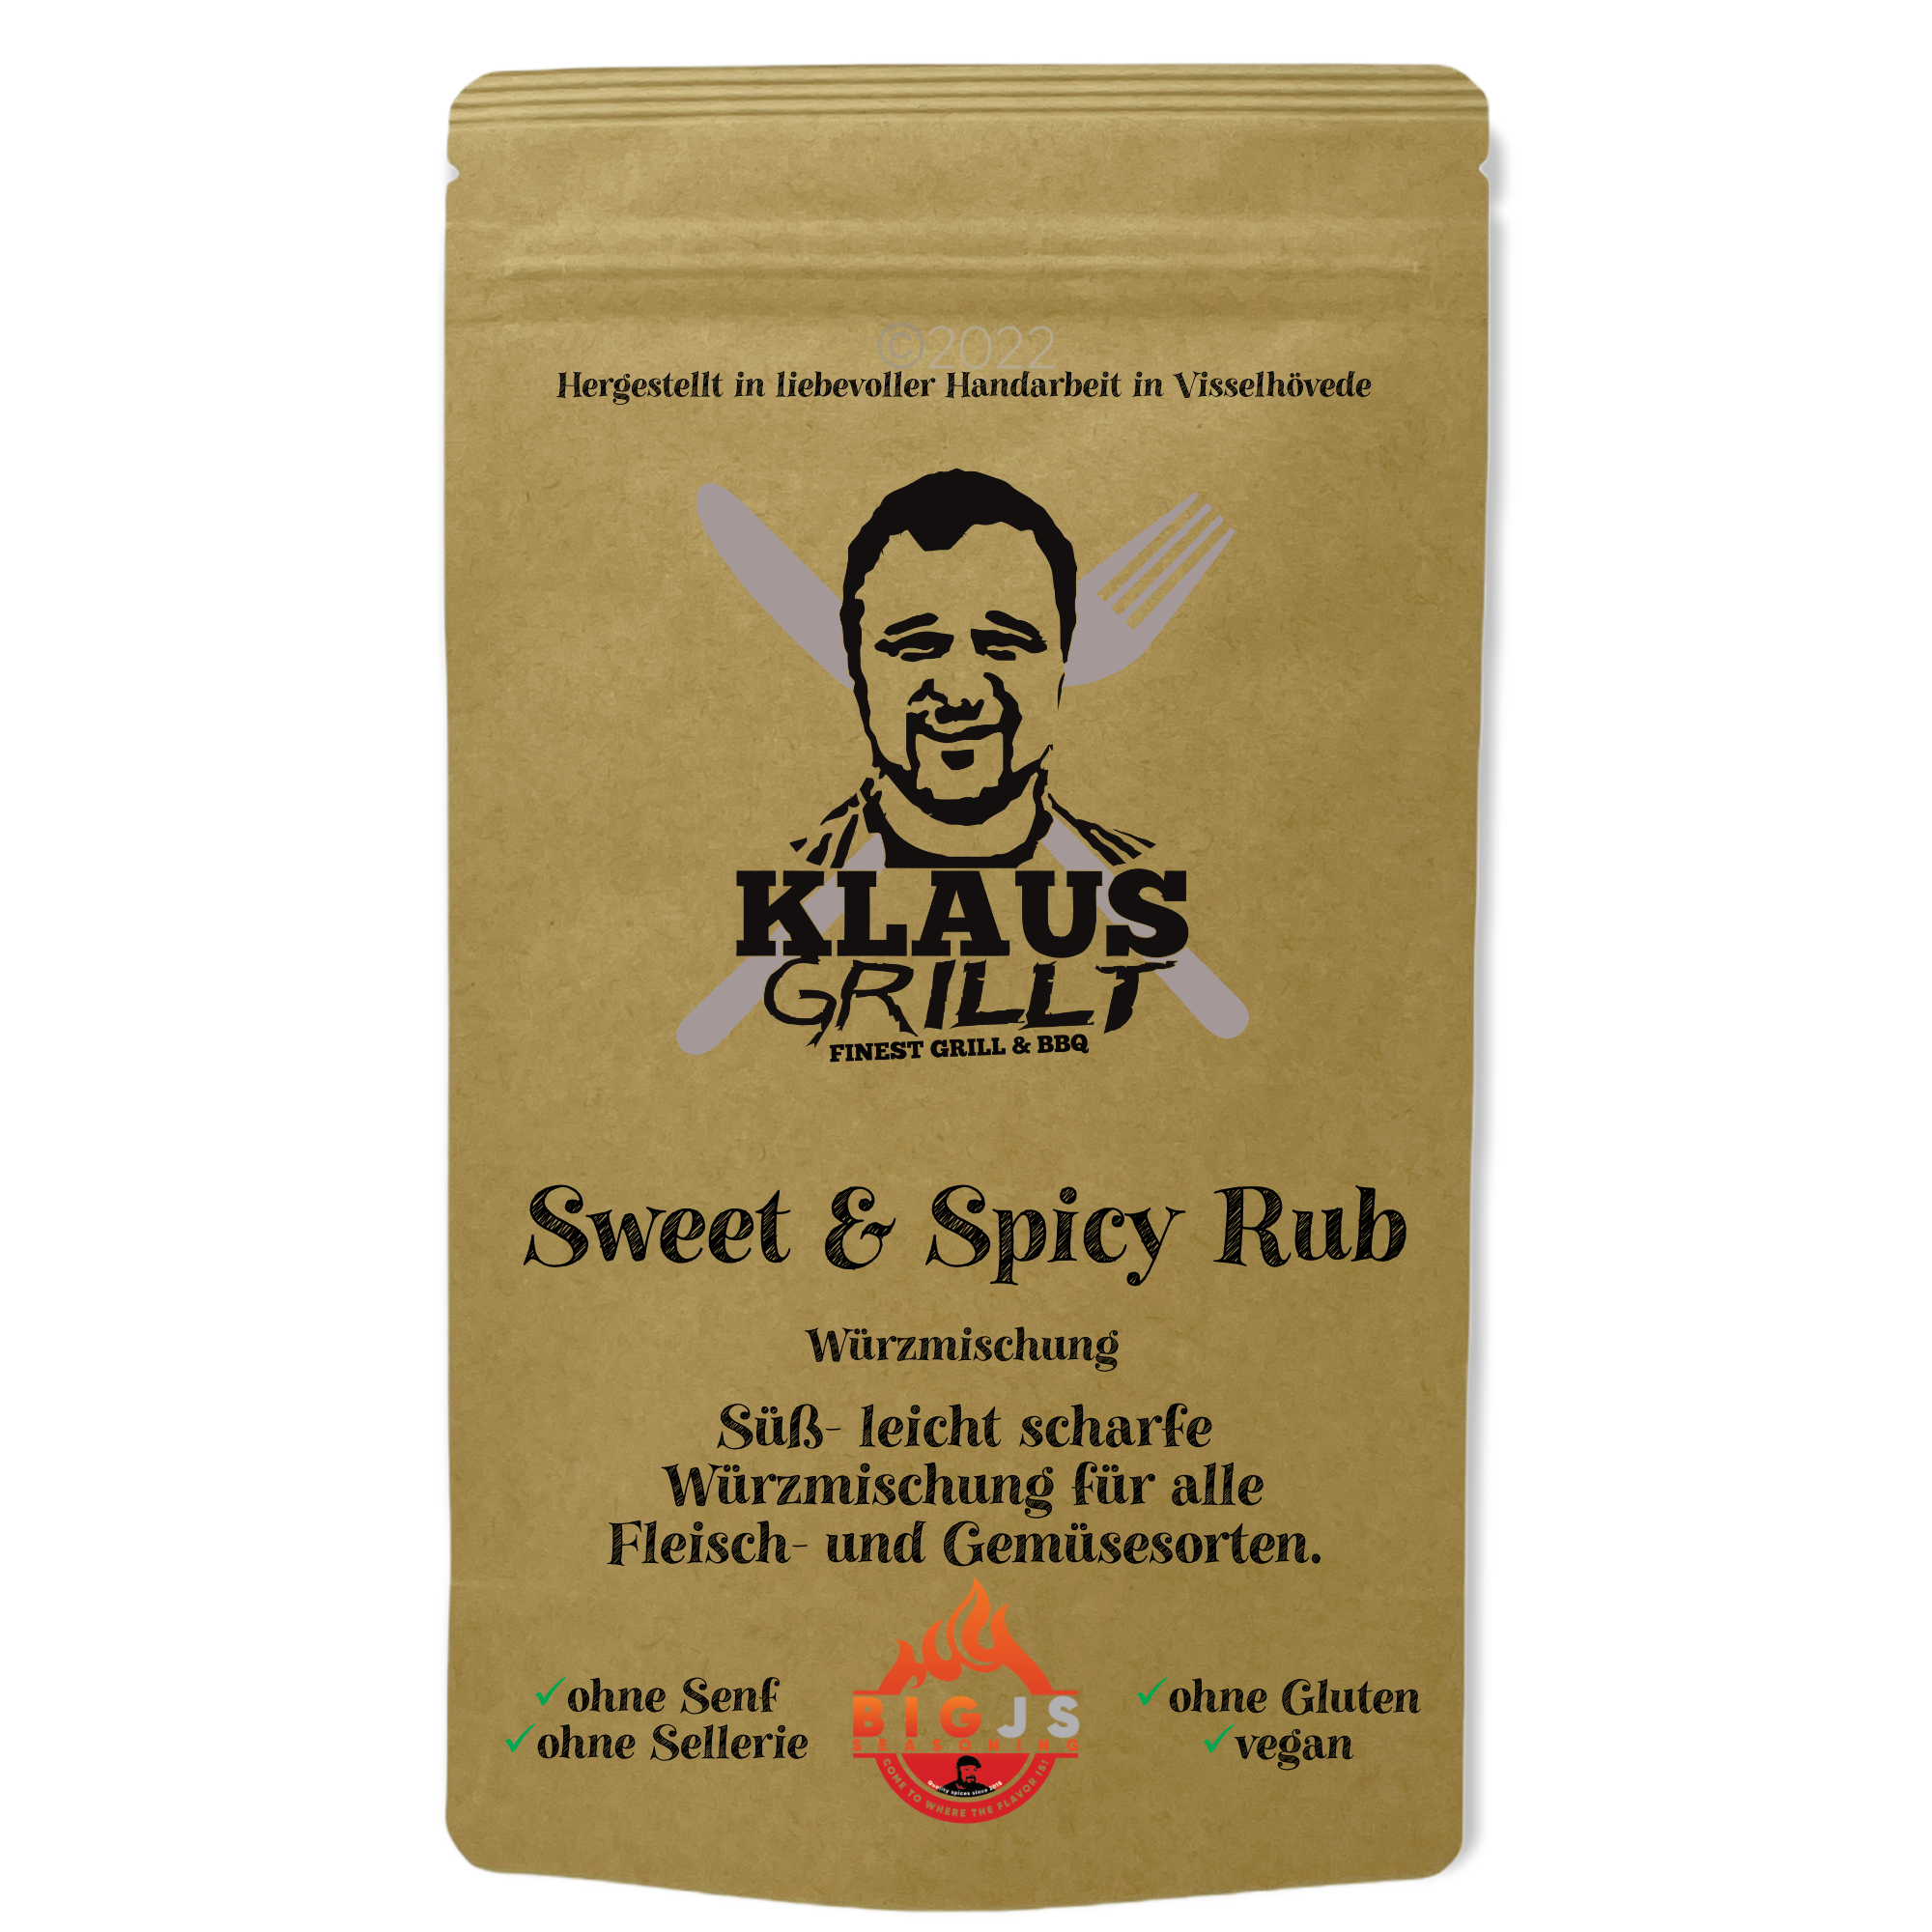 Klaus Grillt - Sweet & Spicy Rub 250g Beutel